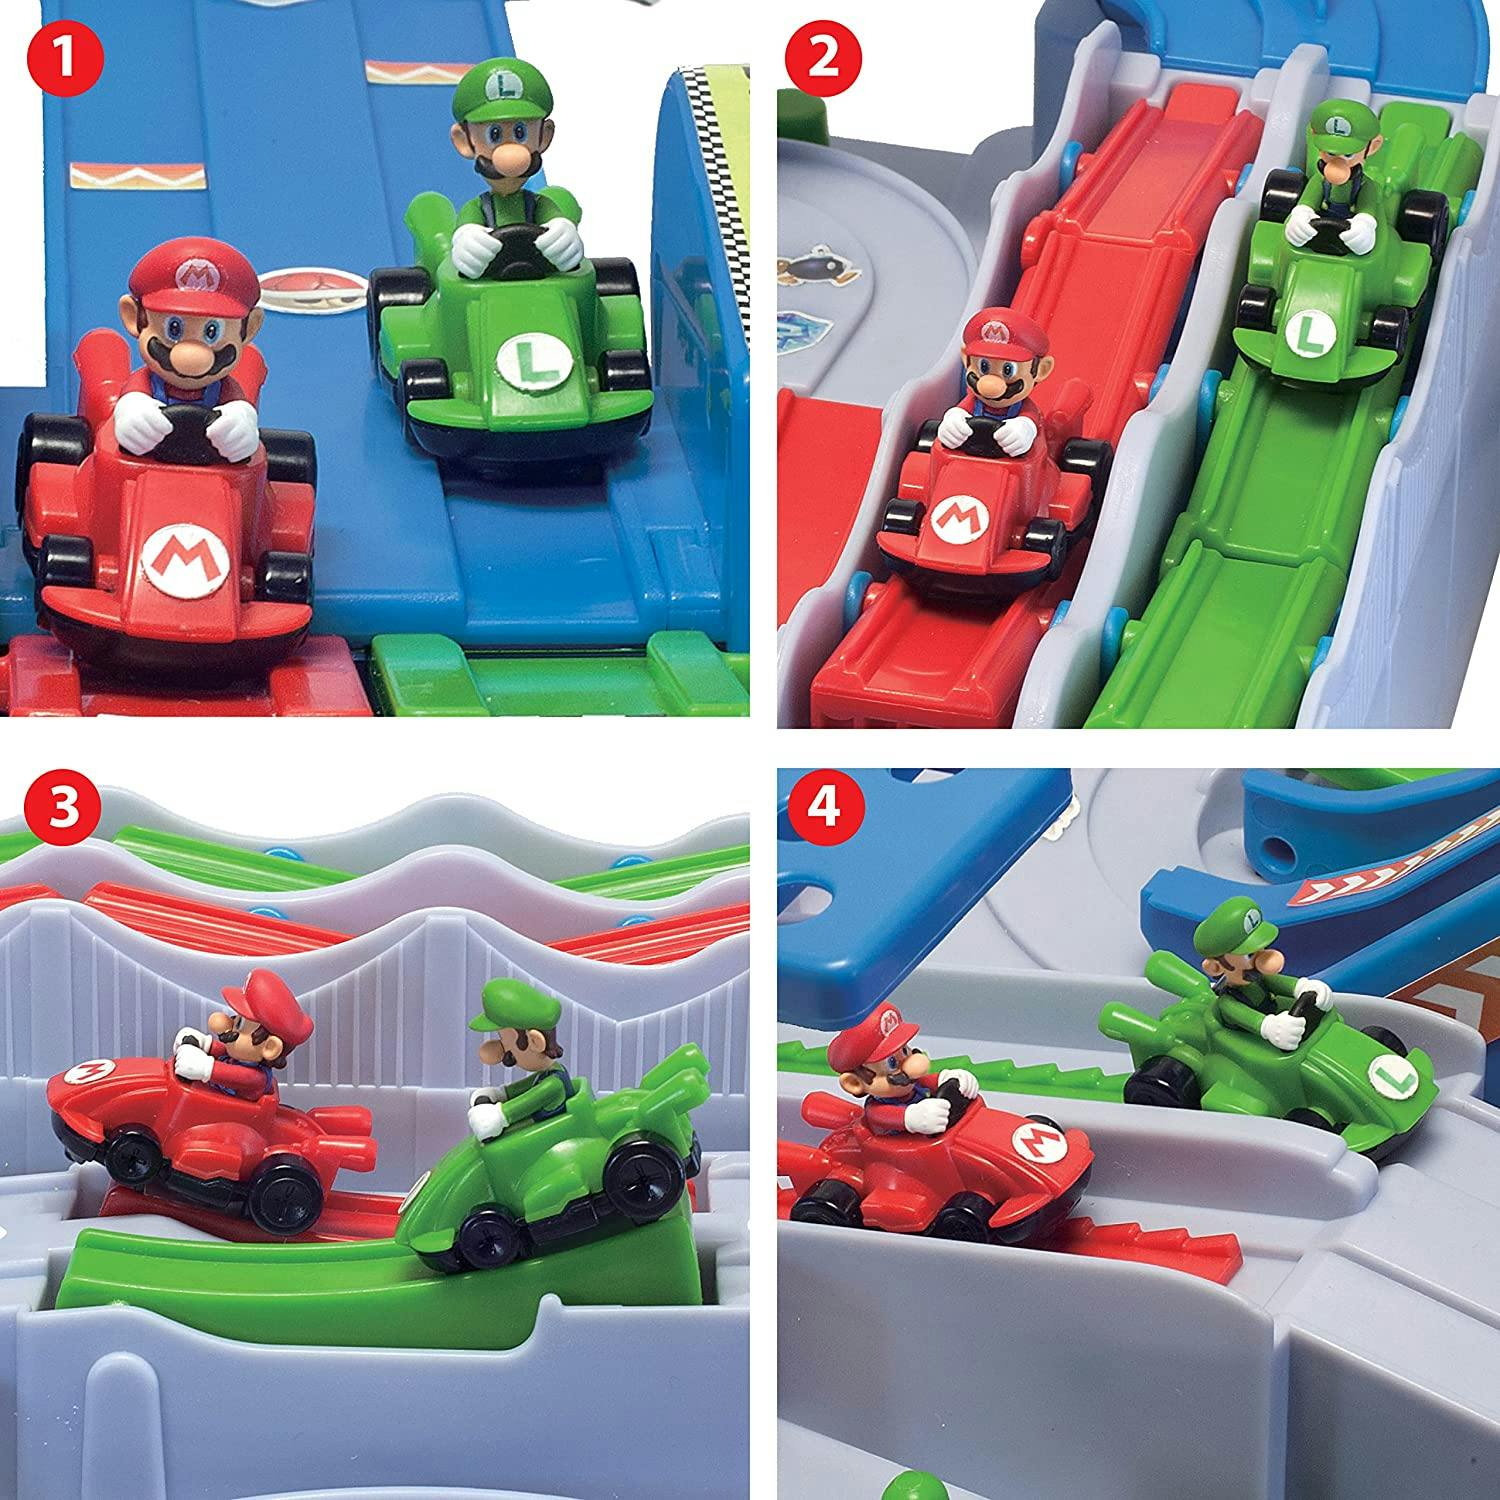 Super Mario Kart Racing Delux